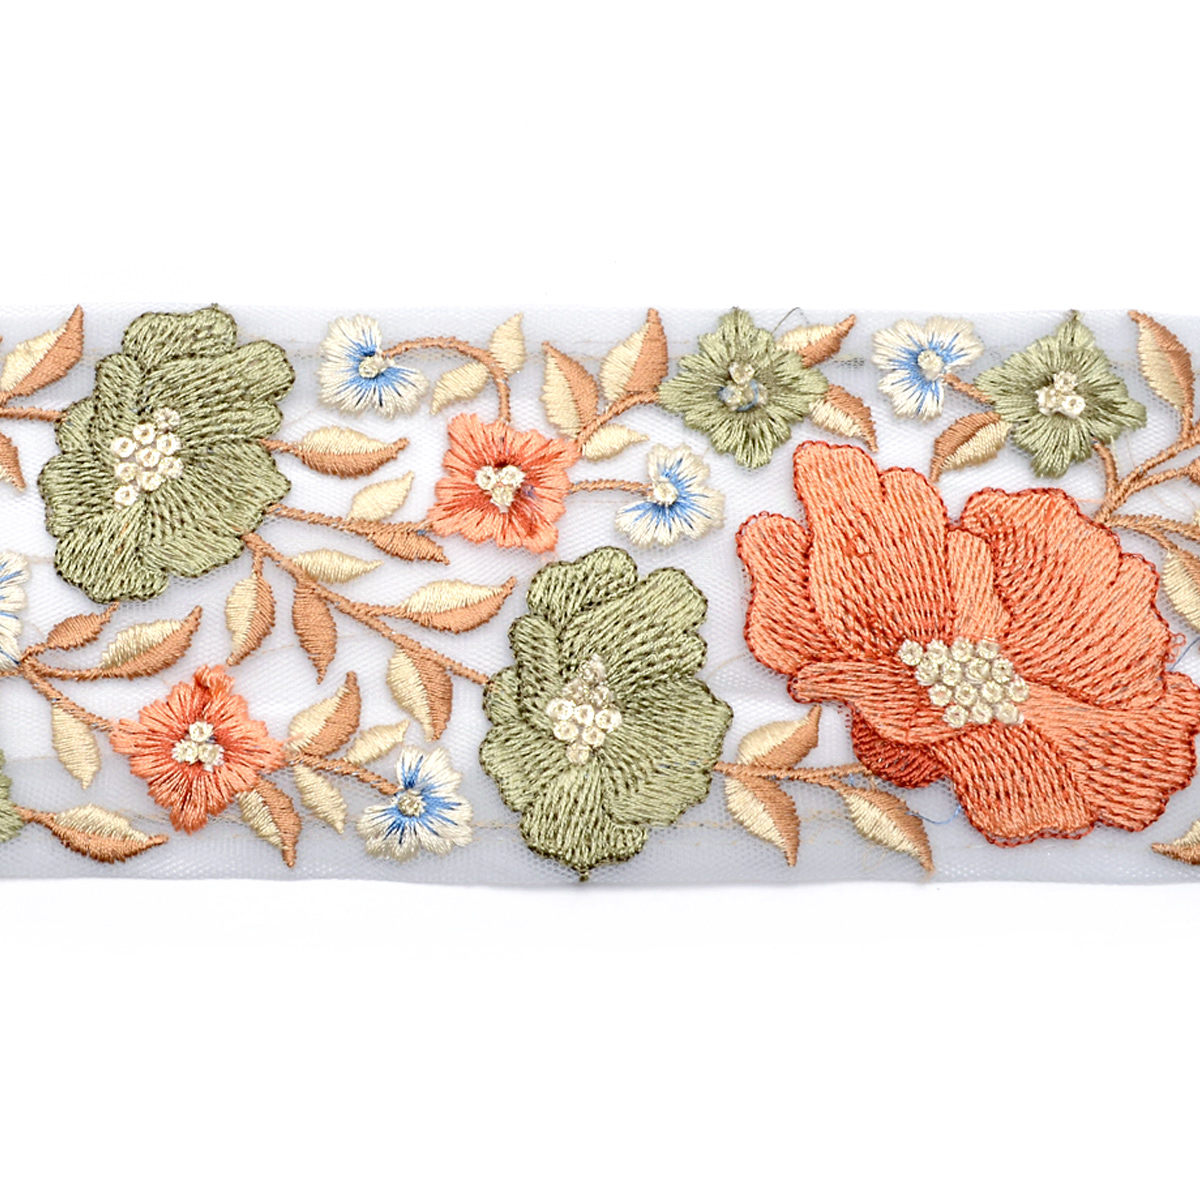 インド刺繍リボン ラメ糸と優雅なお花のシアー刺繍リボン 幅80mm 10cm 